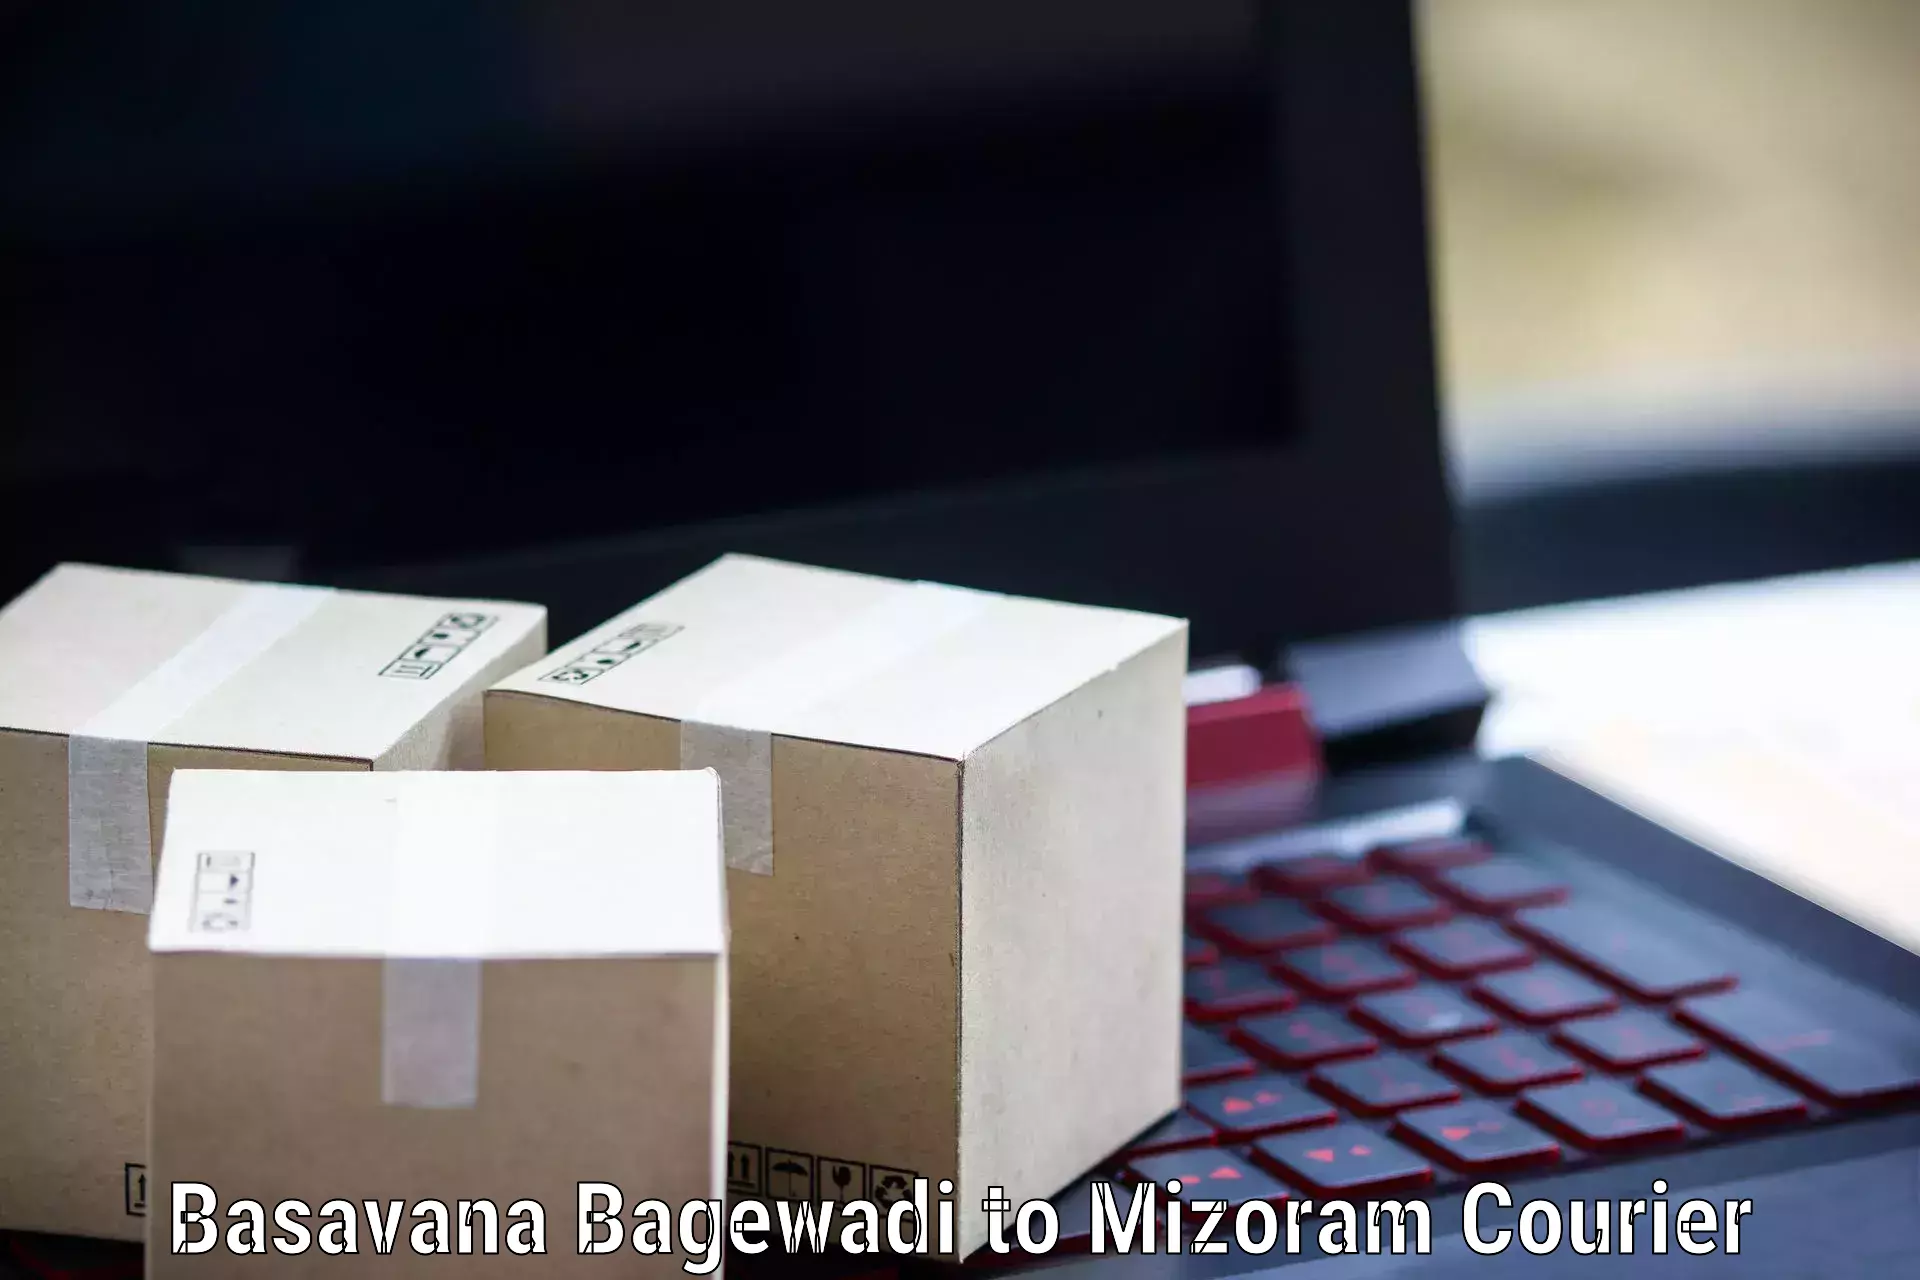 Express logistics providers Basavana Bagewadi to Chawngte